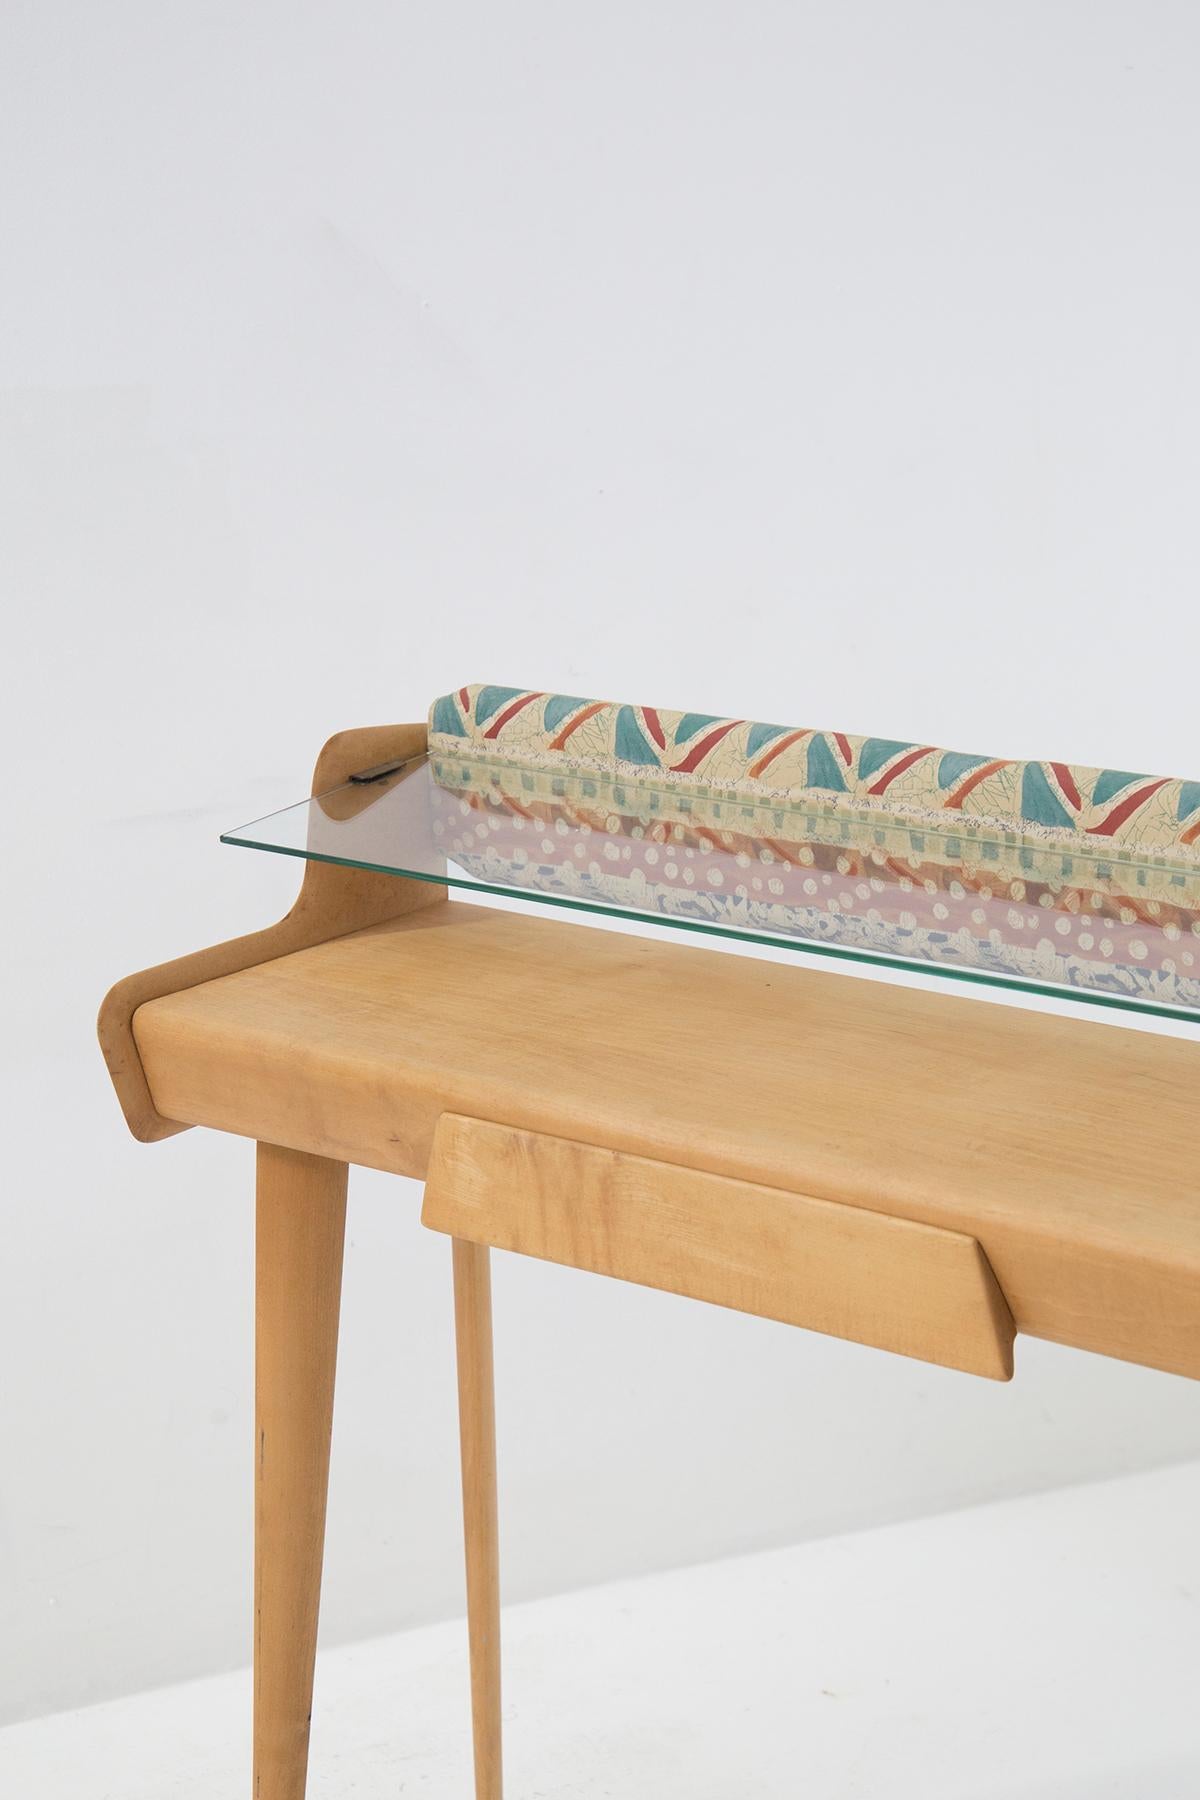 Hübscher Holzschreibtisch aus feiner italienischer Fertigung aus den 1950er Jahren.
Der Schreibtisch ist im Gestell vollständig aus hellem, edlem Holz gefertigt.
Die Beine, die die Struktur tragen, sind lang und zylinderförmig. Die beiden hinteren